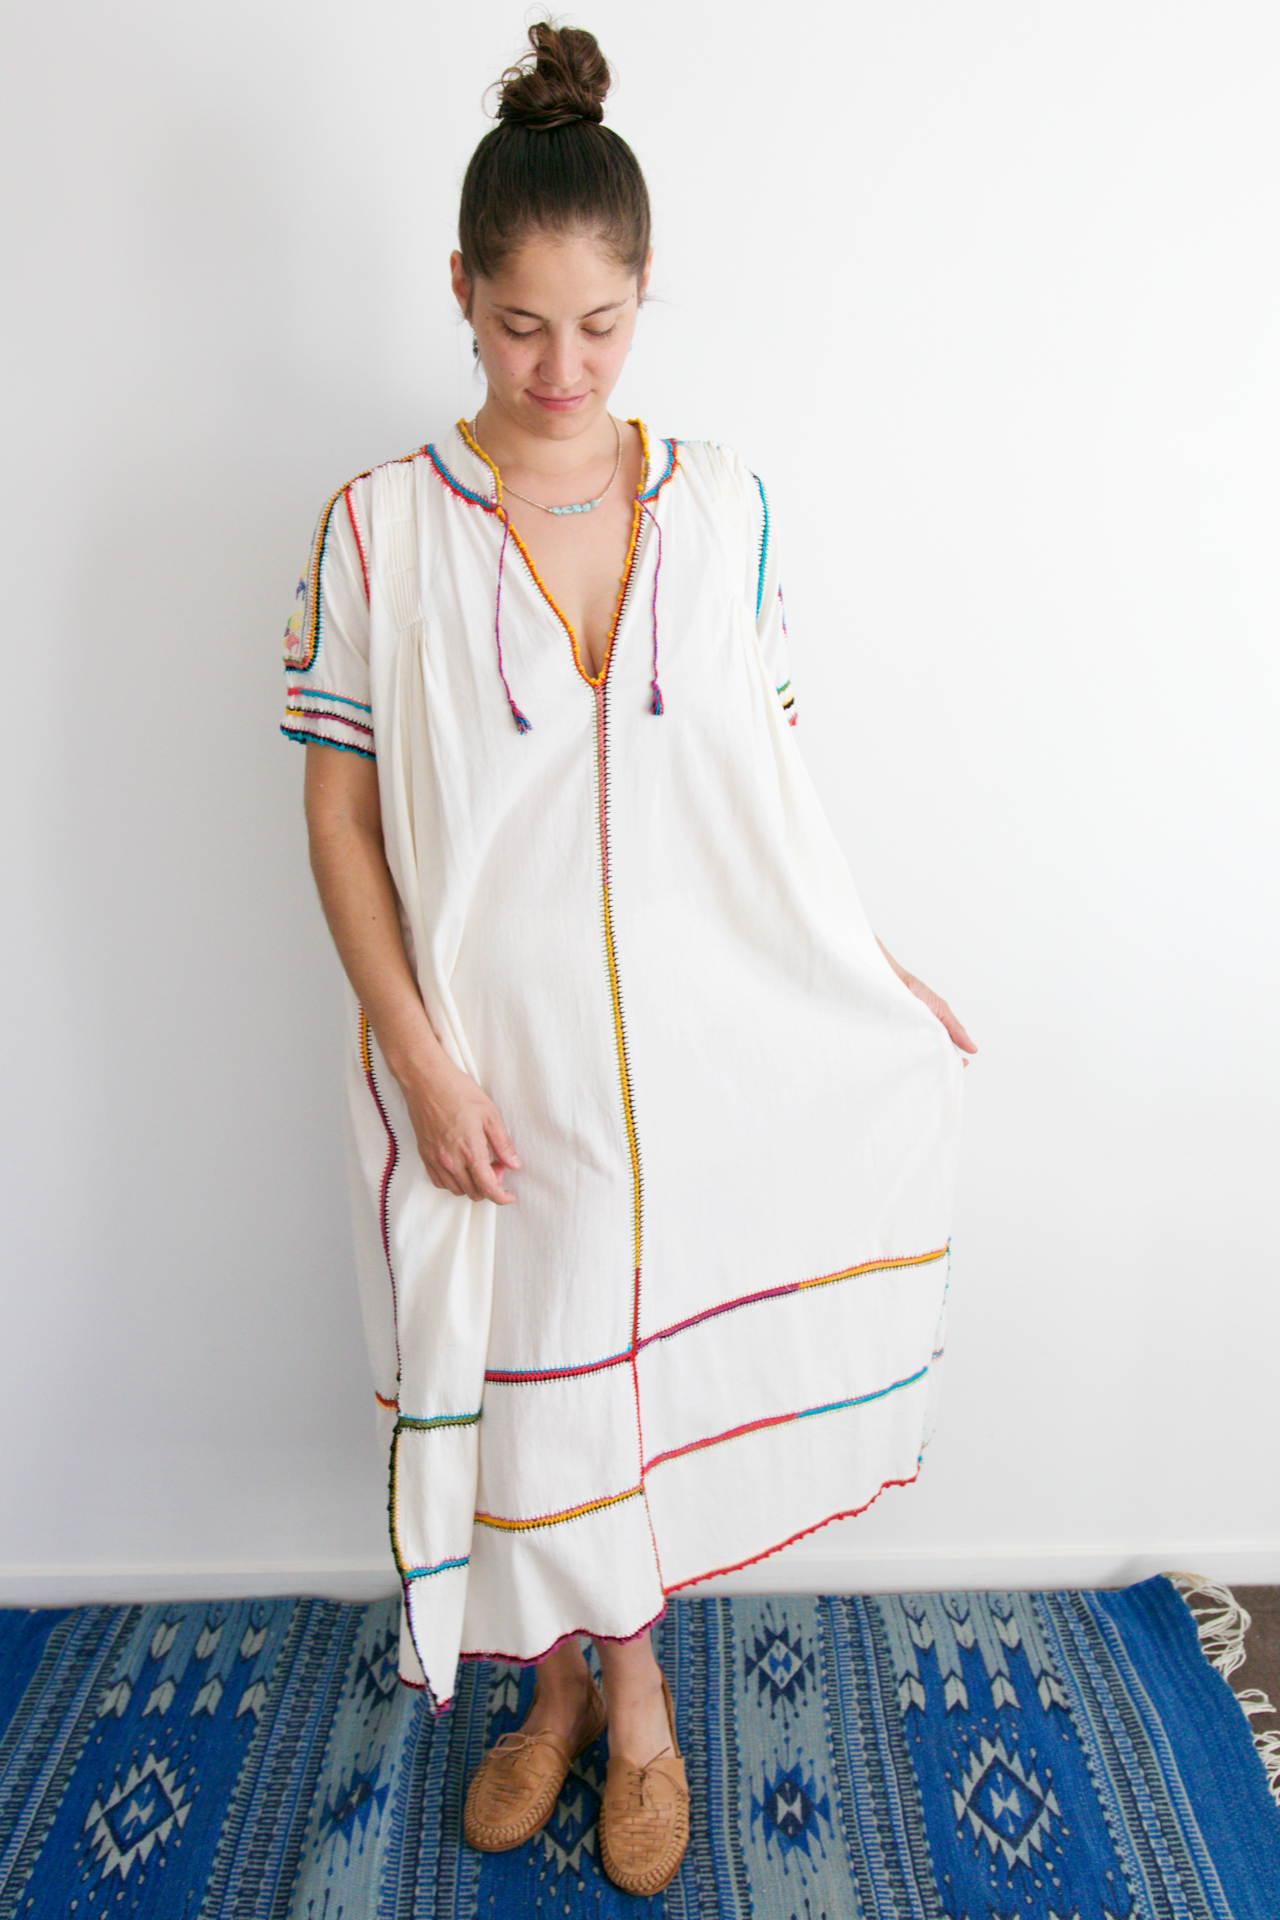 Rio Maxi Dress - Multicolour Crochet 02